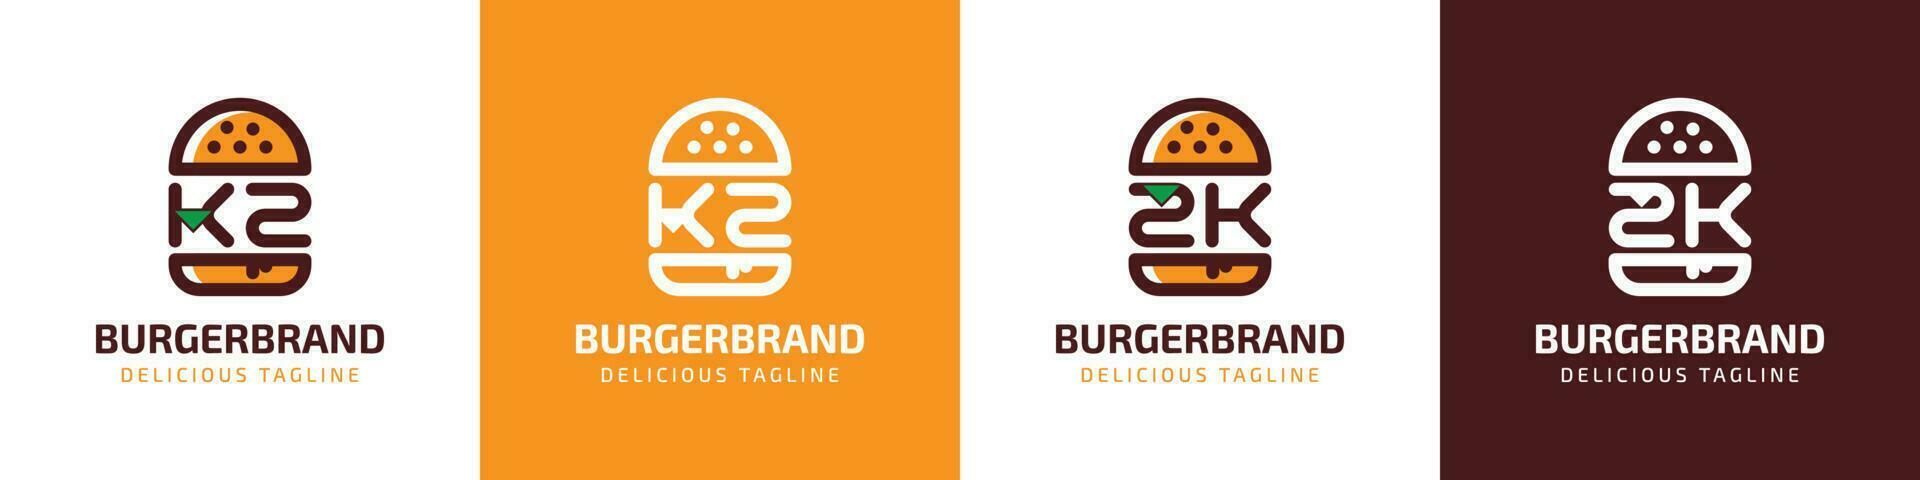 letra kz y zk hamburguesa logo, adecuado para ninguna negocio relacionado a hamburguesa con kz o zk iniciales. vector